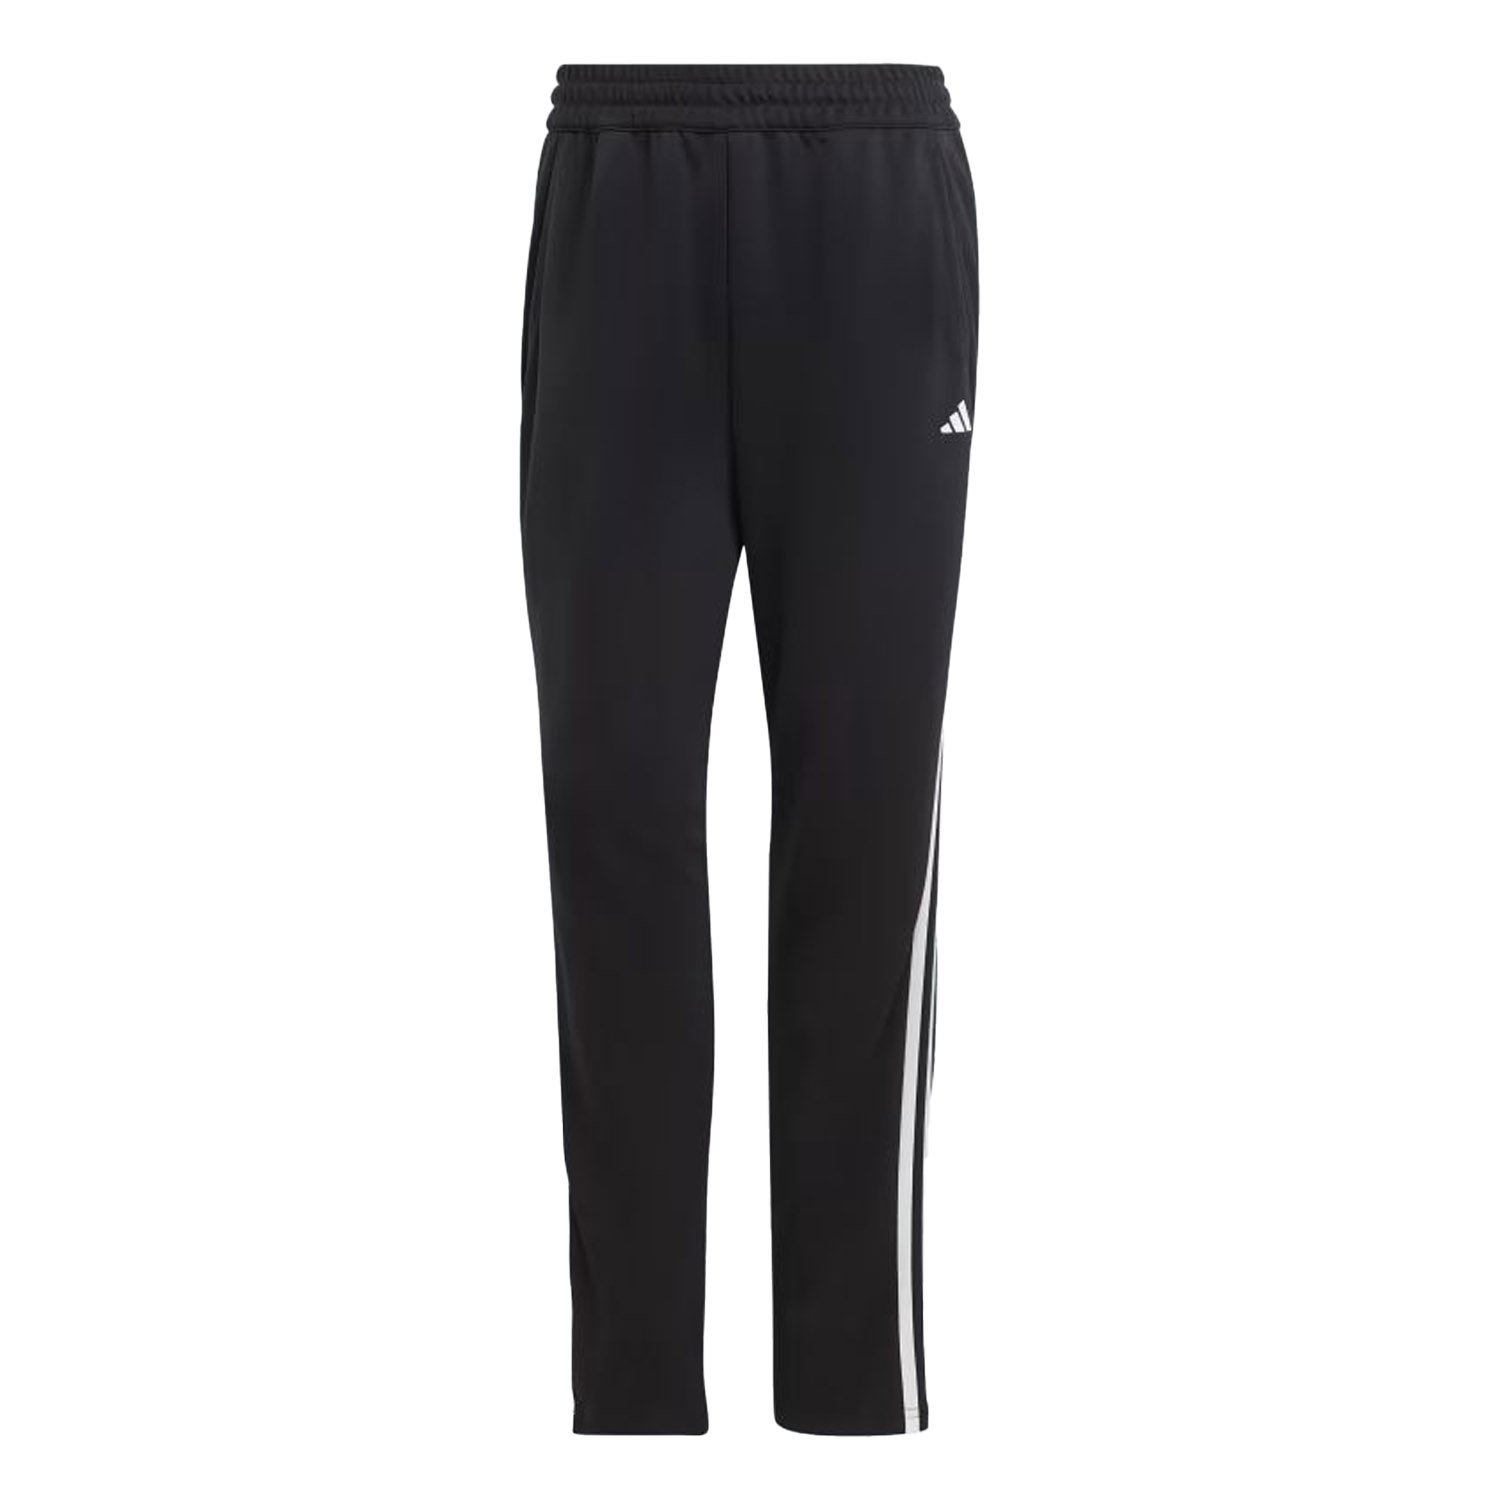 Adidas Tr-Es 3S Kadın Koşu Pantolonu - Siyah - 1